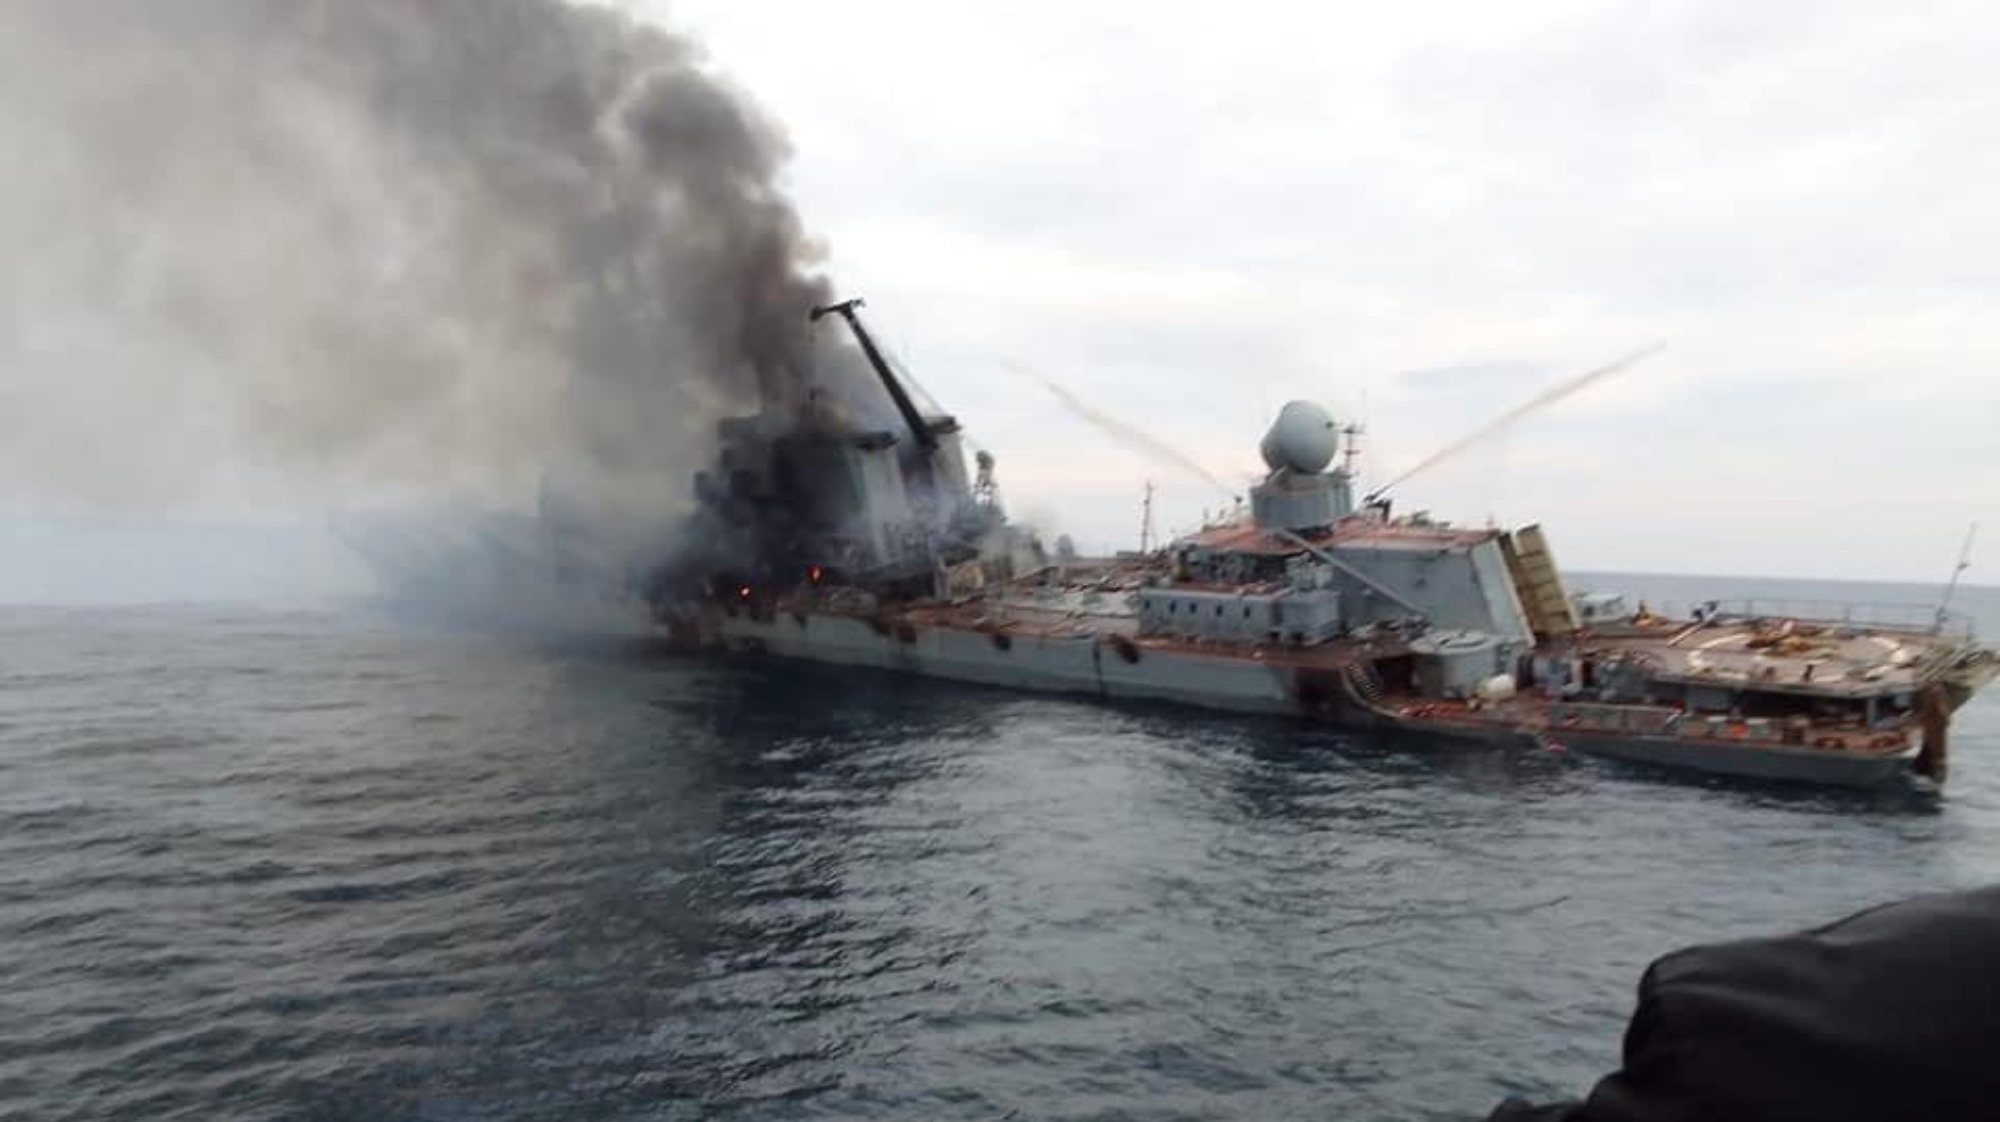 Imagens mostram a embarcação depois de ter sido atingido pelos militares ucranianos, versão que a Rússia nega